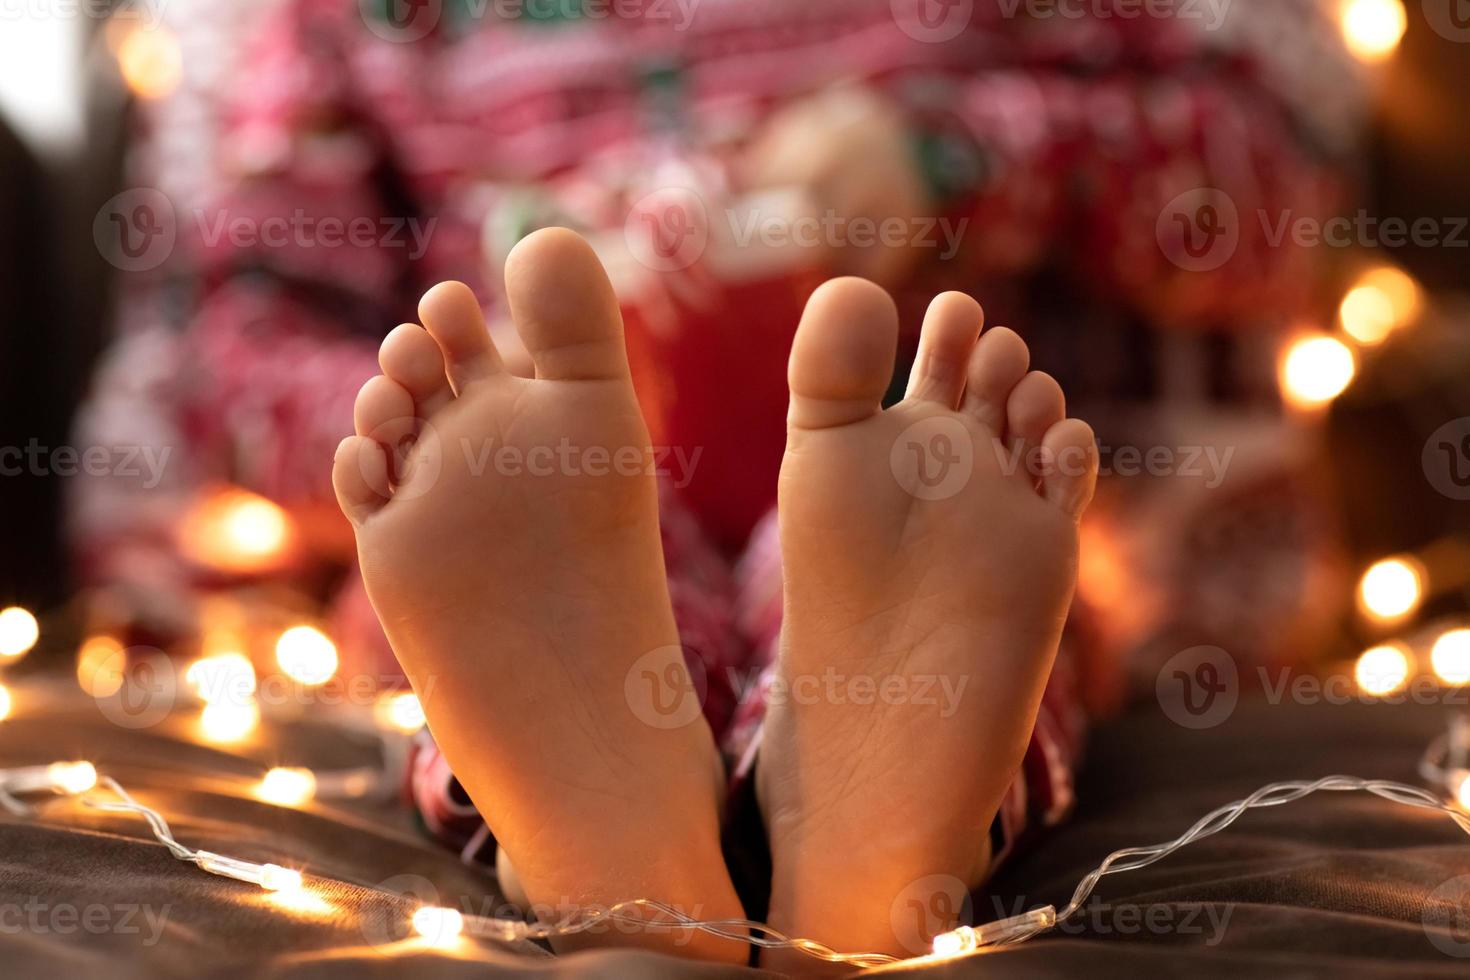 primer plano niño pies descalzos niño en pijama rojo de navidad sostenga taza taza rayas verde rojo caramelo bastones de navidad bokeh luces de fondo. Año Nuevo foto